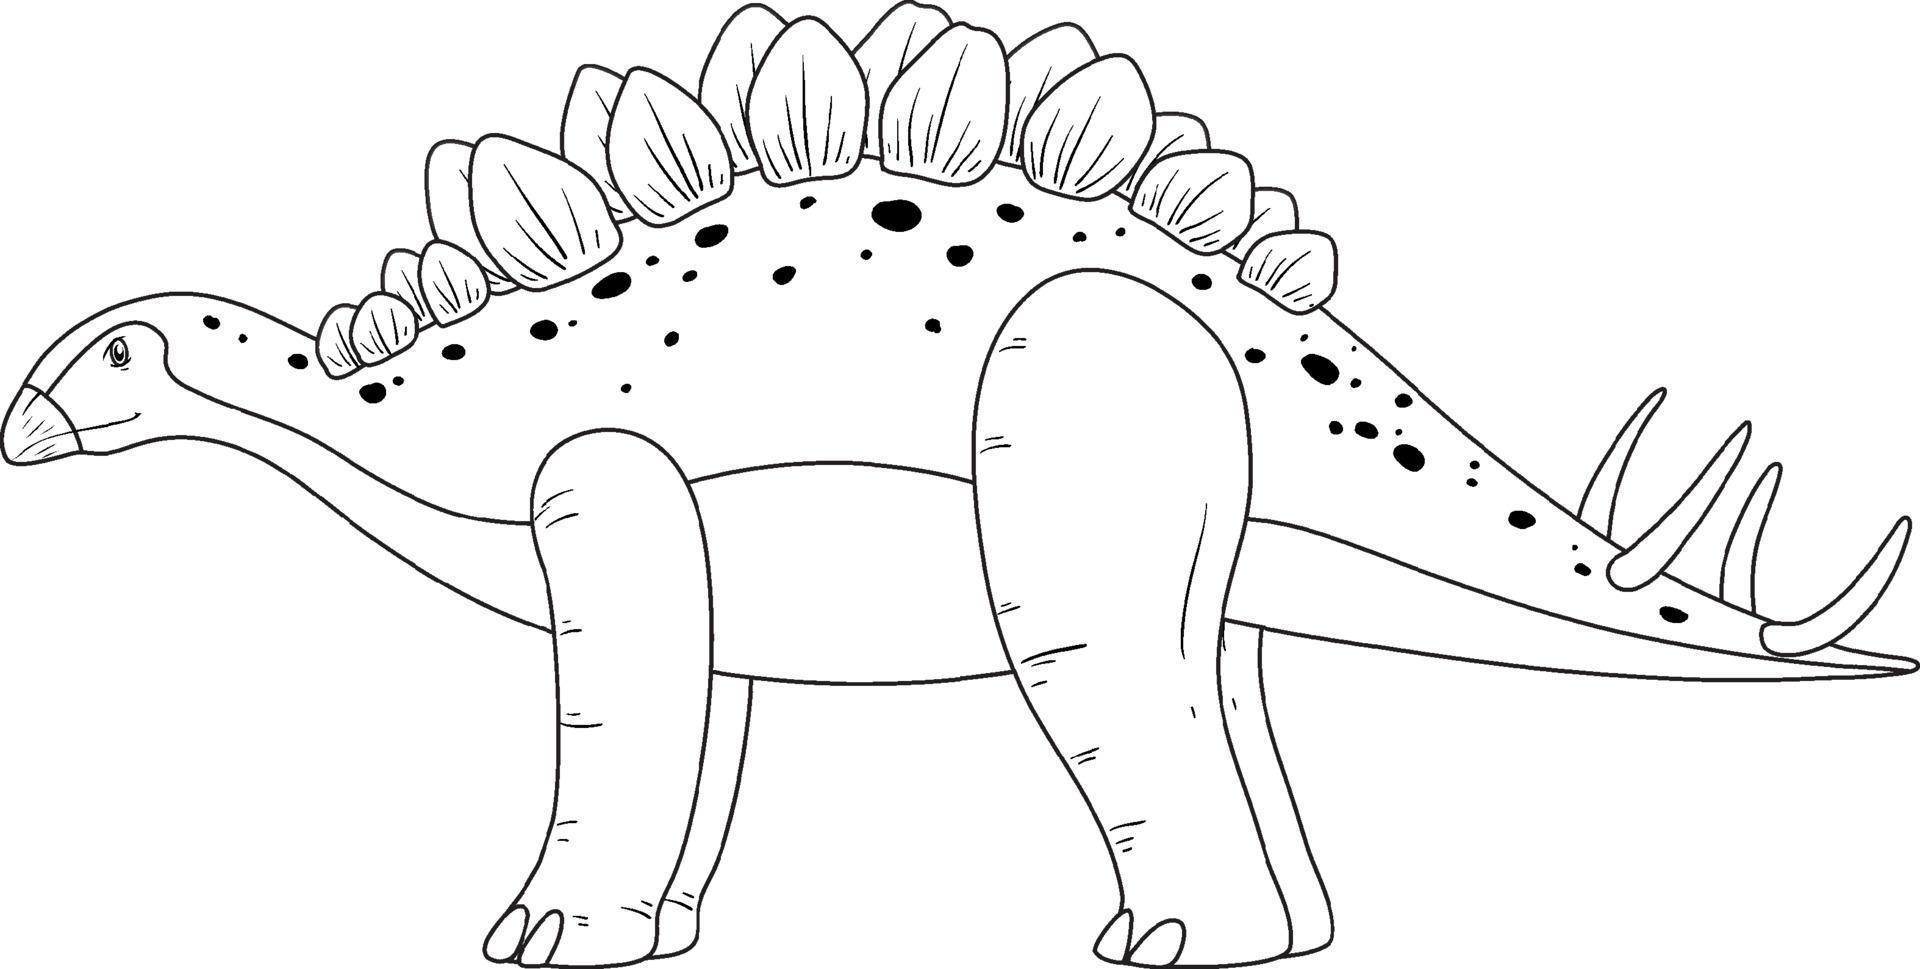 stegosaurus dinosaurie doodle kontur på vit bakgrund vektor